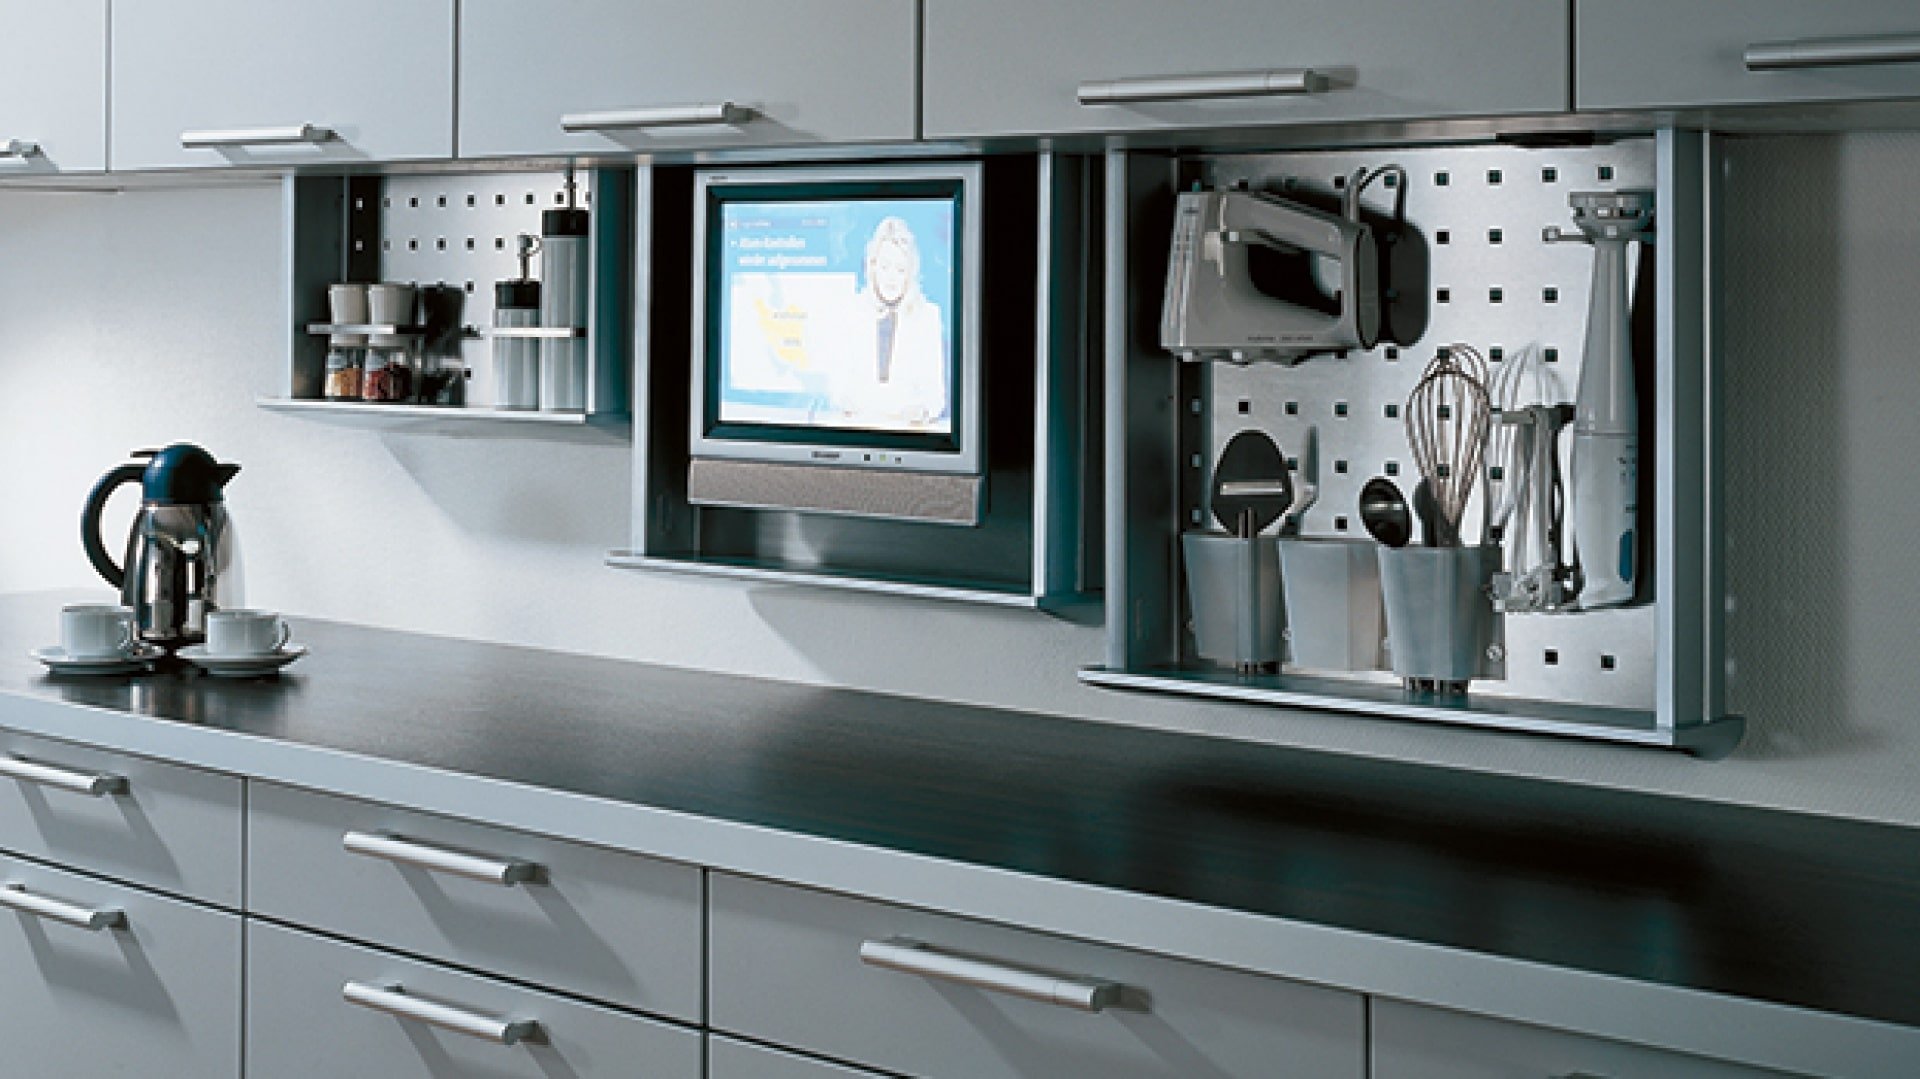 Встроенные телевизоры для кухни. Телевизор встроенный в кухонный шкаф. Выдвижной телевизор на кухне. Кухонный шкаф с телевизором. Встраиваемый телевизор для кухни.